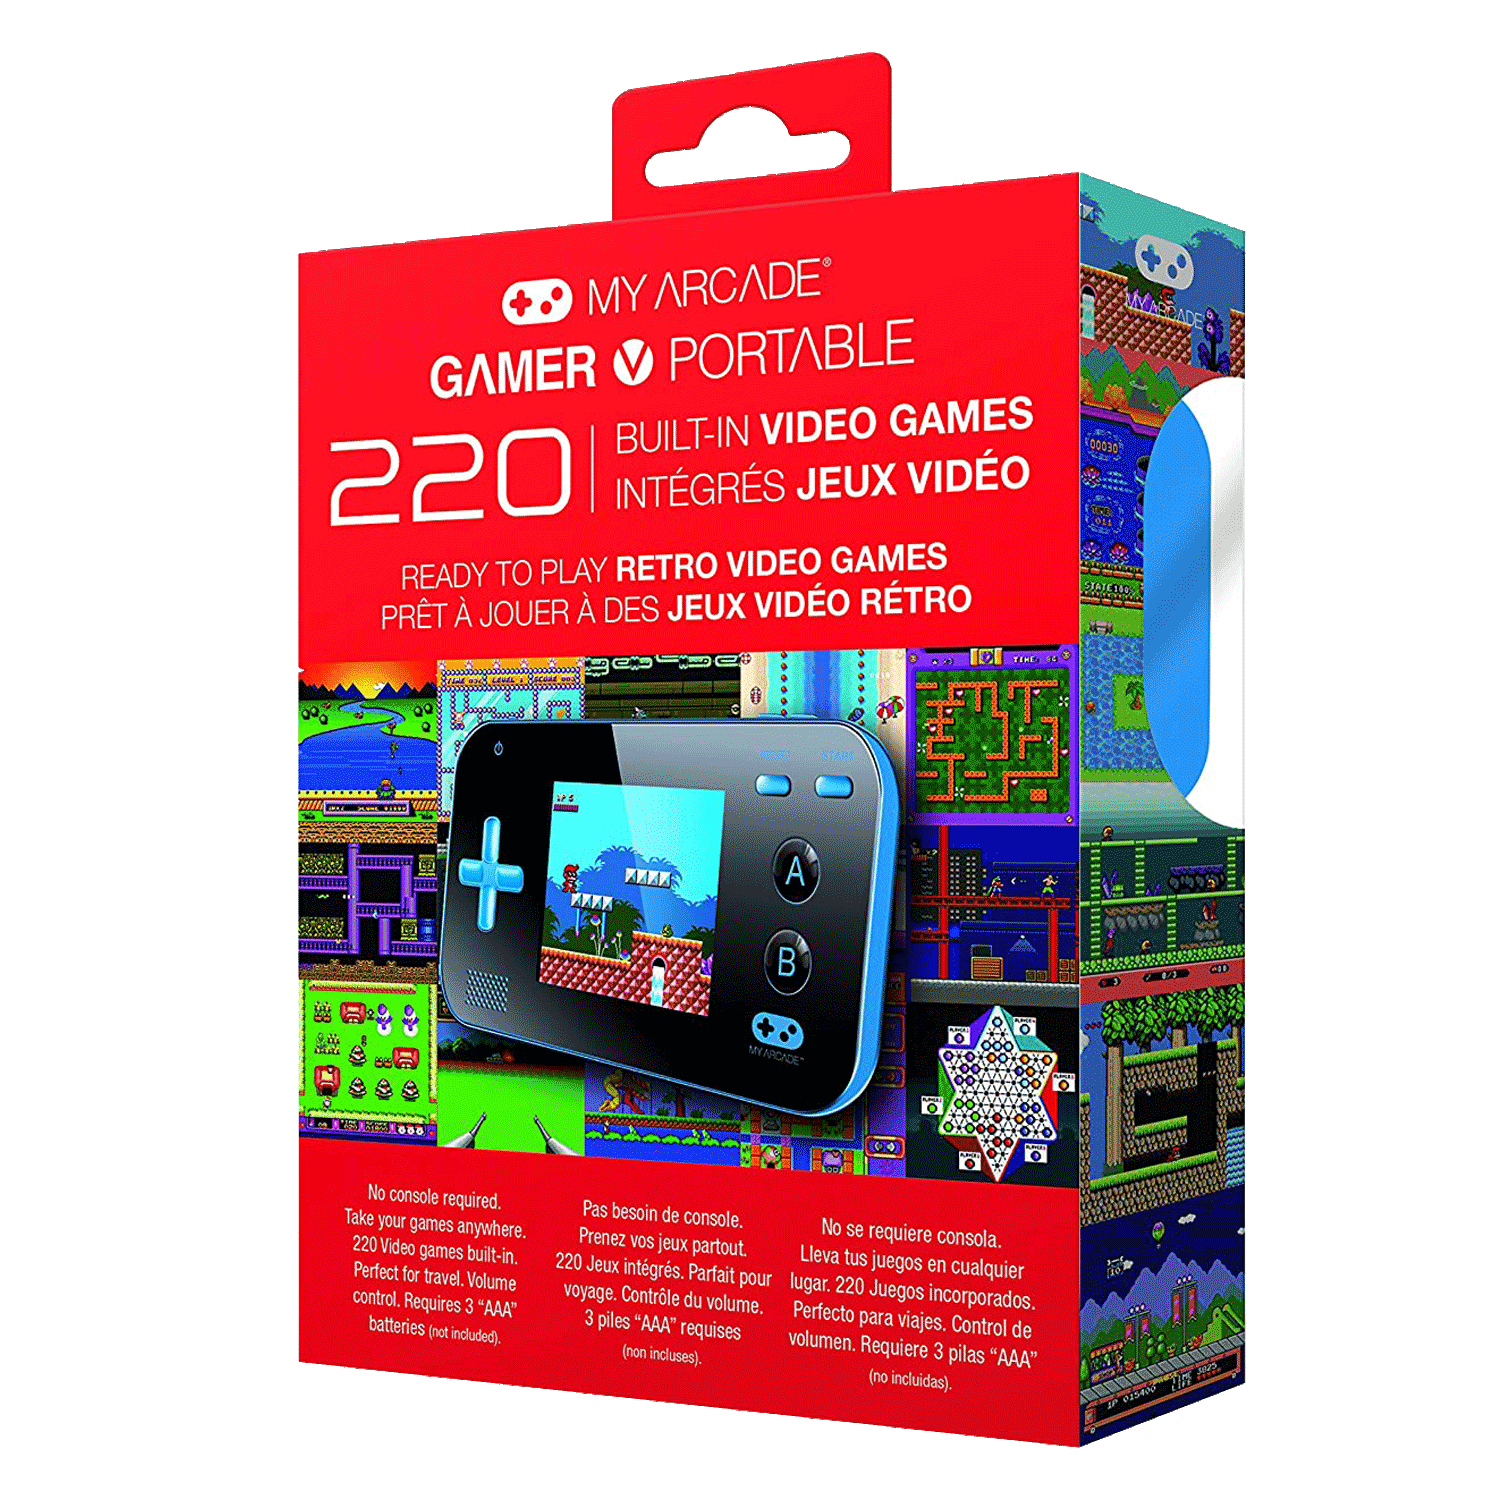 Console My Arcade Gamer V Portable DGUN-2888 - Azul